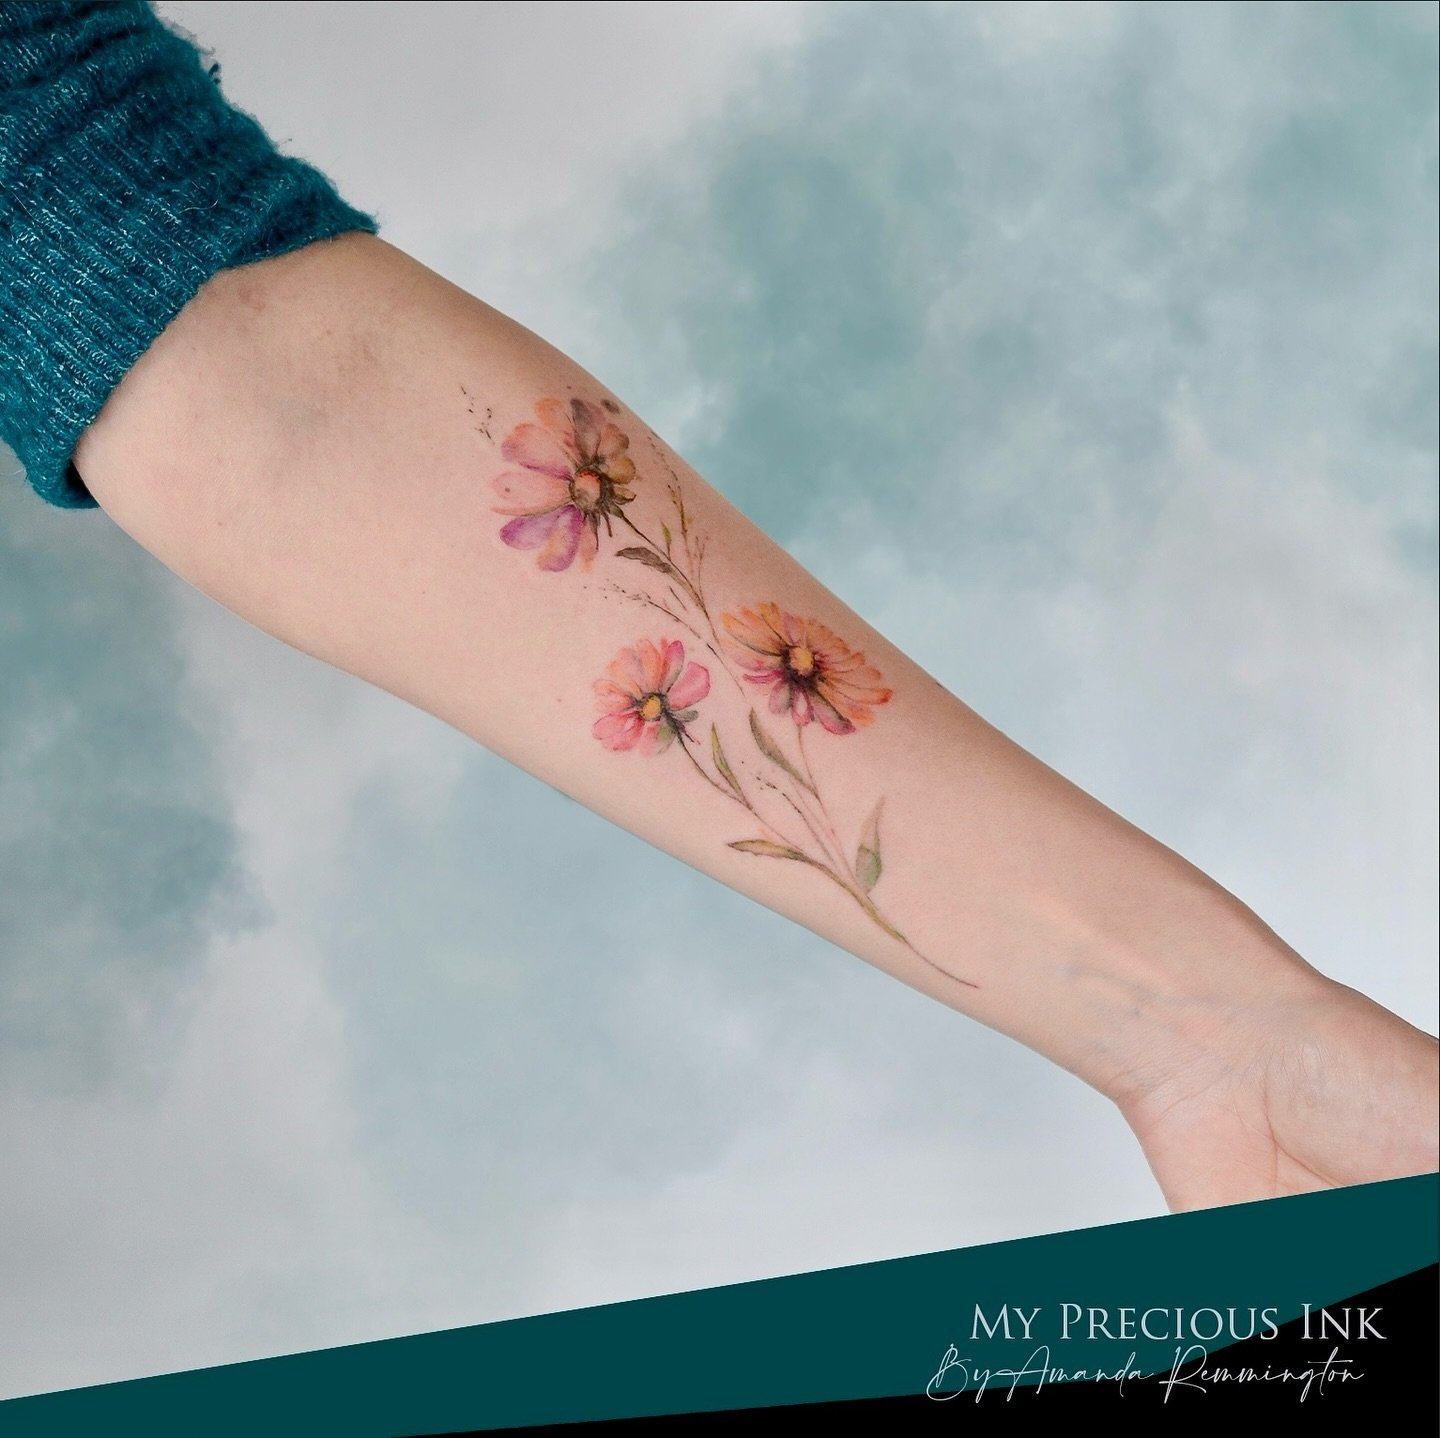 🌼 Field flowers 🌼
Would you like a floral tattoo?

///&mdash;&mdash;&gt; www.mypreciousink.nl &lt;&mdash;&mdash;\\\

#tattoolifecommunity #watercolortattoos  #watercolortattoostyle #watercolortattooartist #abstracttattoo #tattoostagrams #dutchtatto